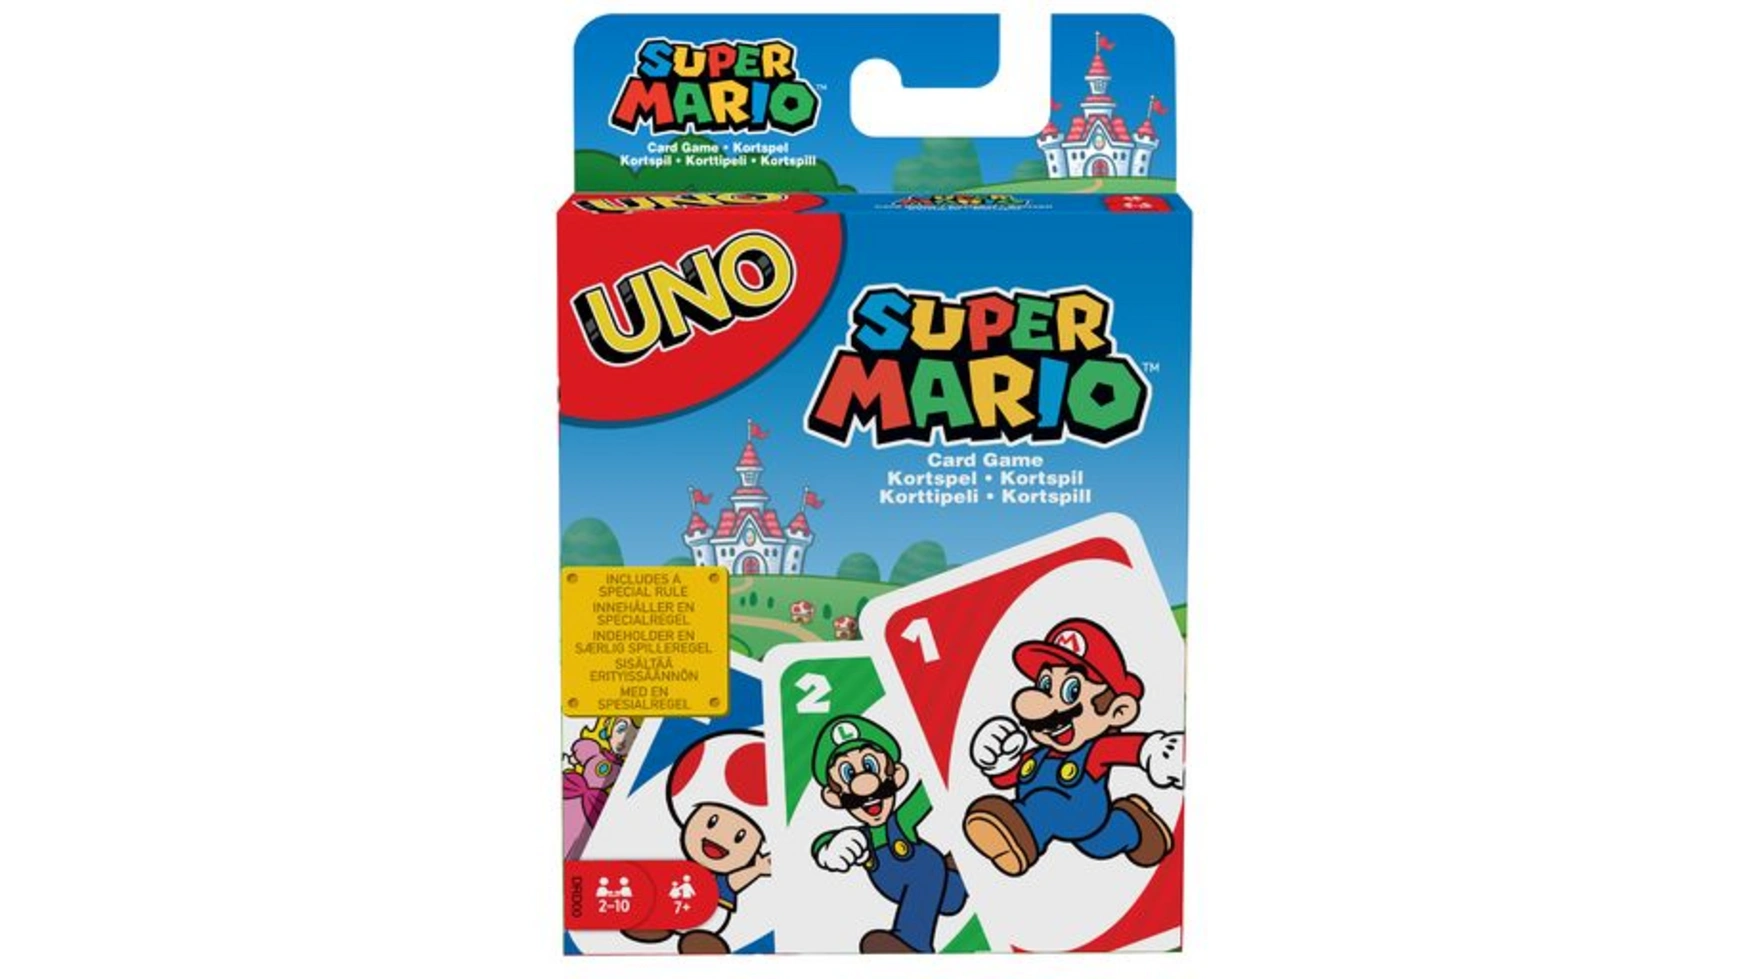 Mattel Games UNO Super Mario, карточная игра, настольная игра, семейная игра mattel games scrabble harry potter комнатная игра настольная игра семейная игра